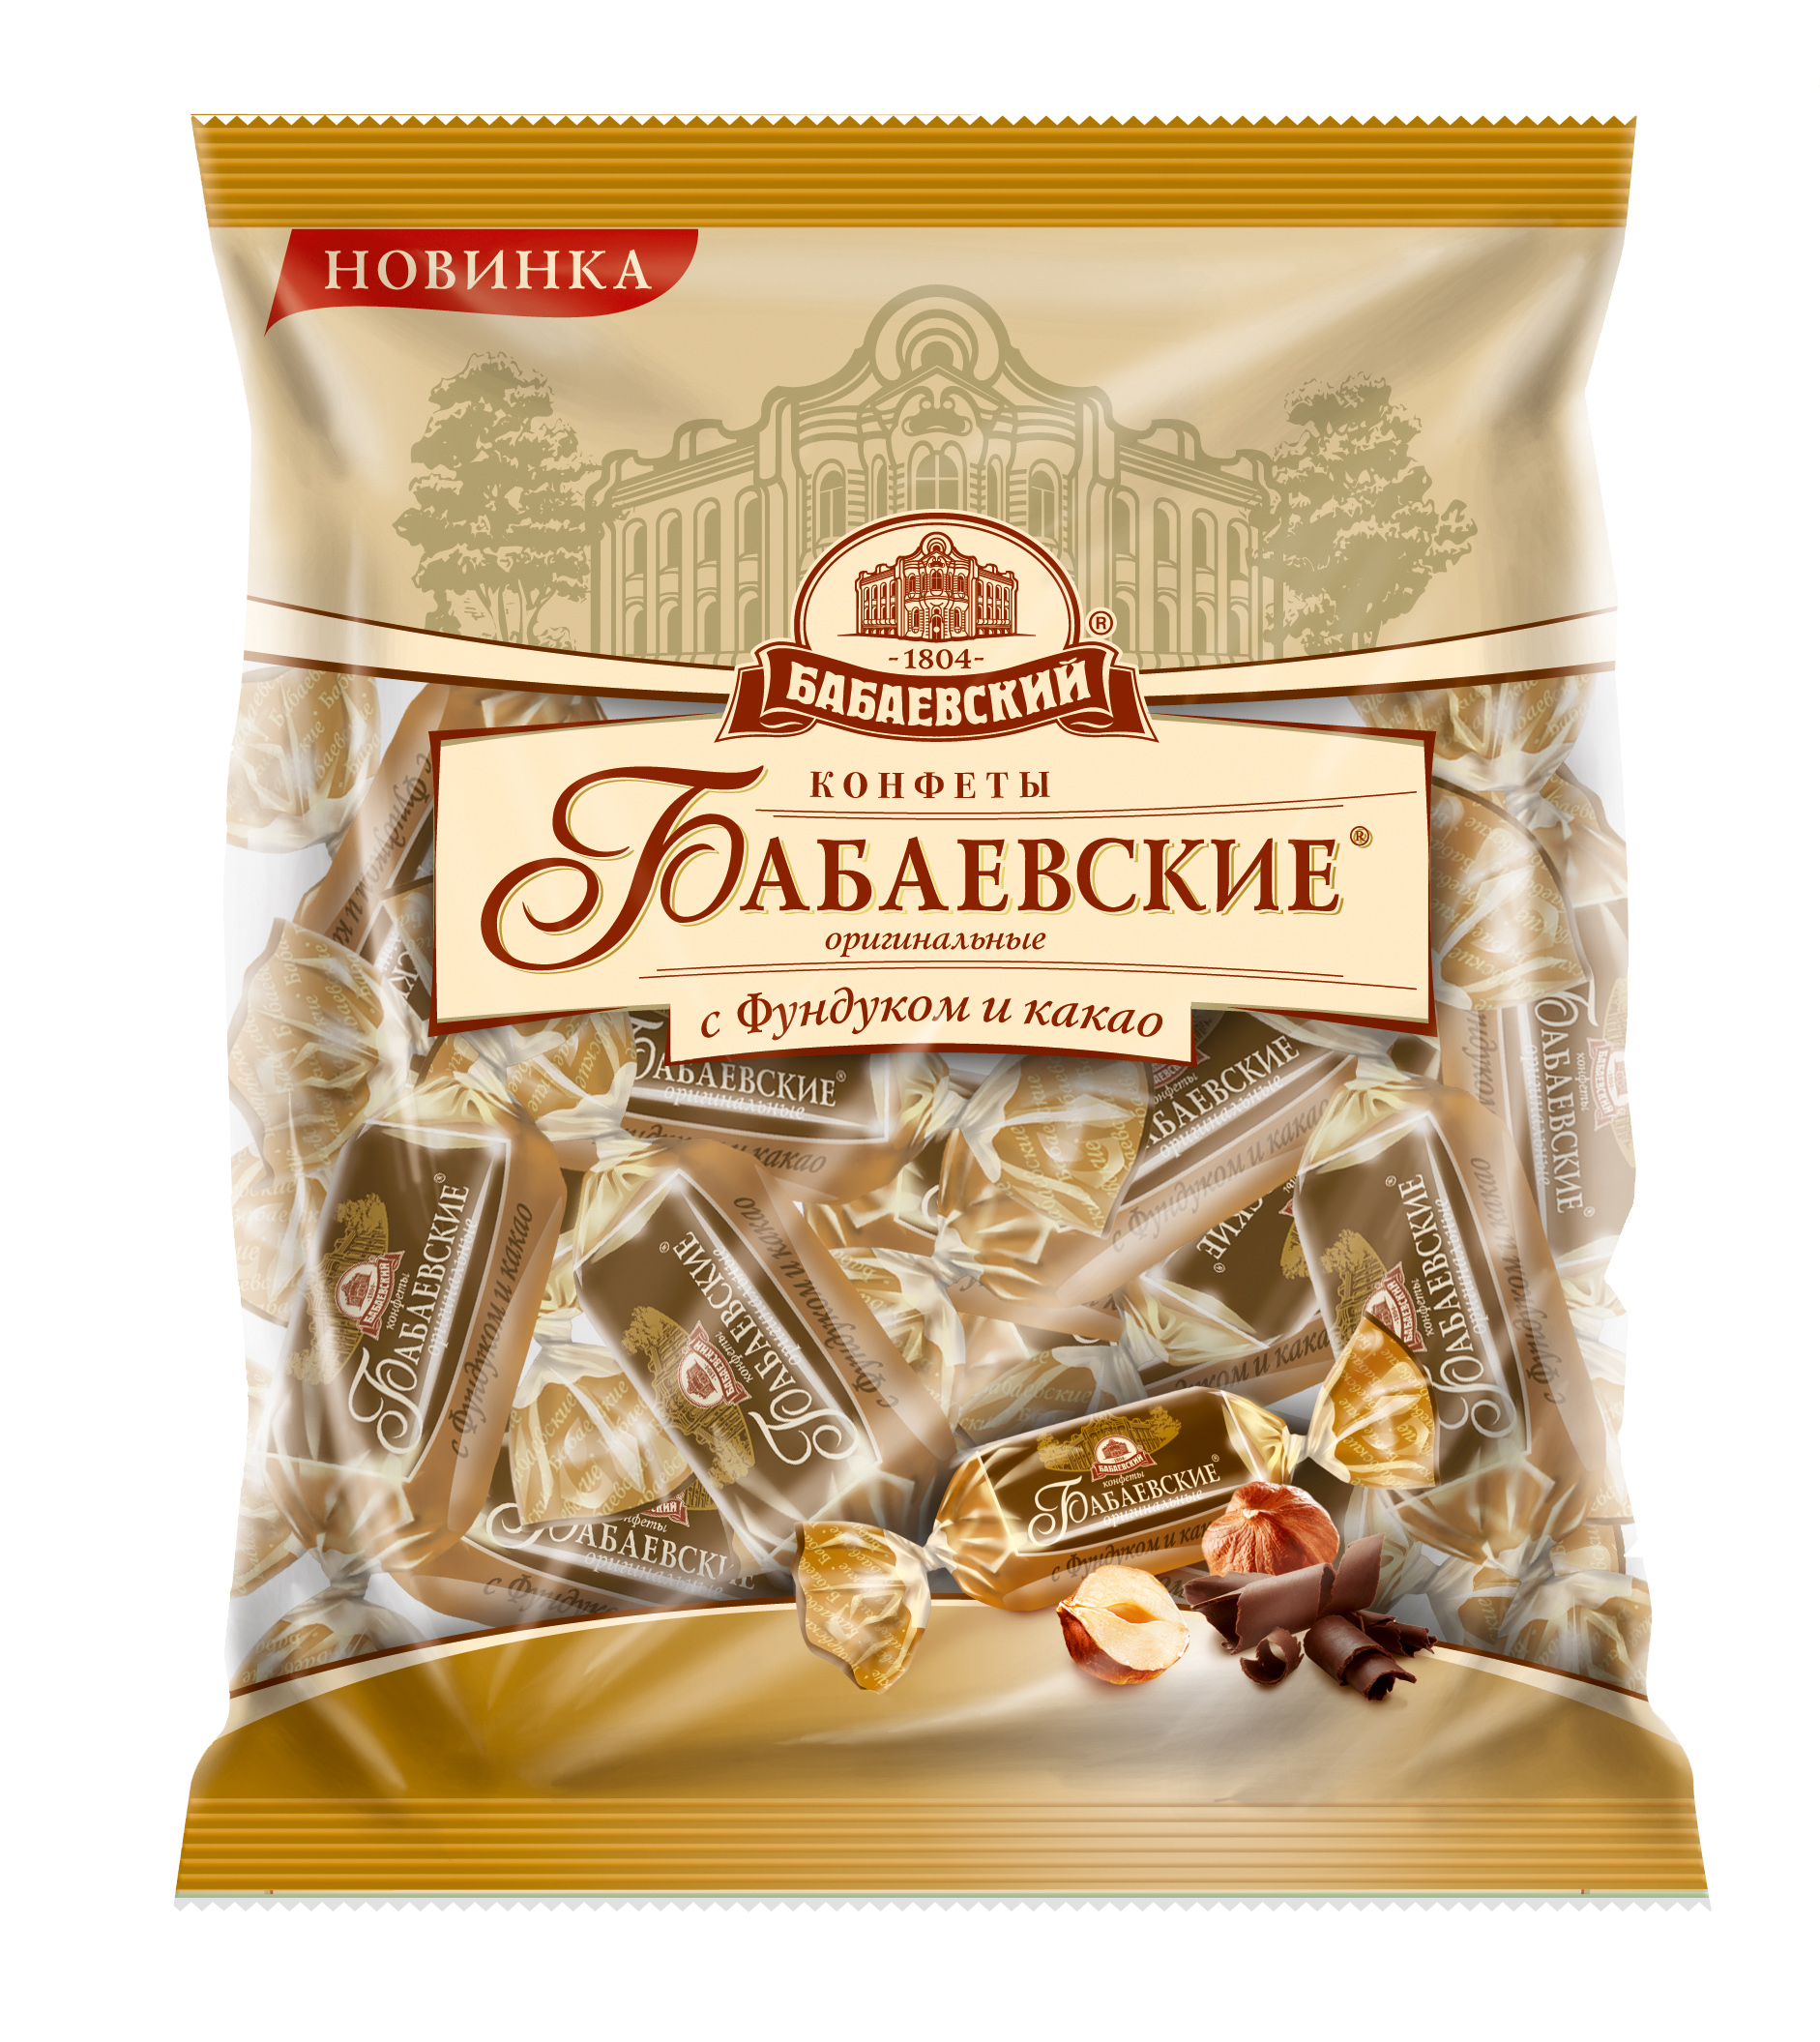 Конфеты Бабаевские оригинальные фундук-какао 200г